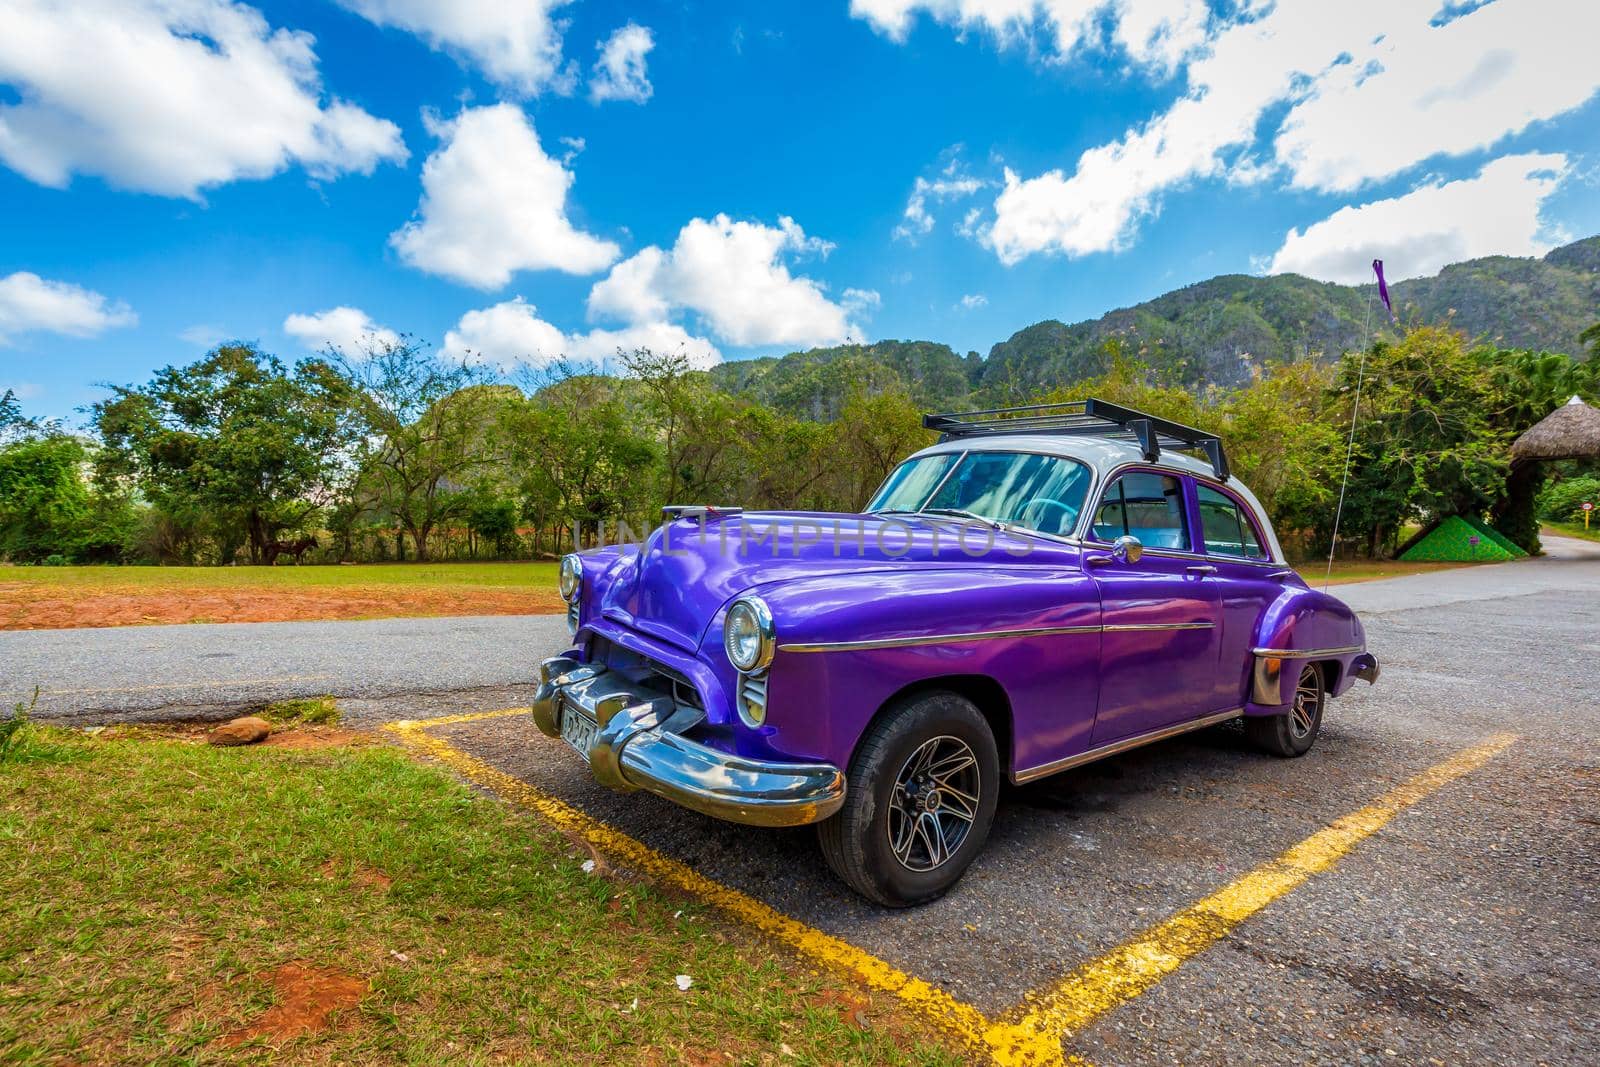 Classic American car in scenic Cuba